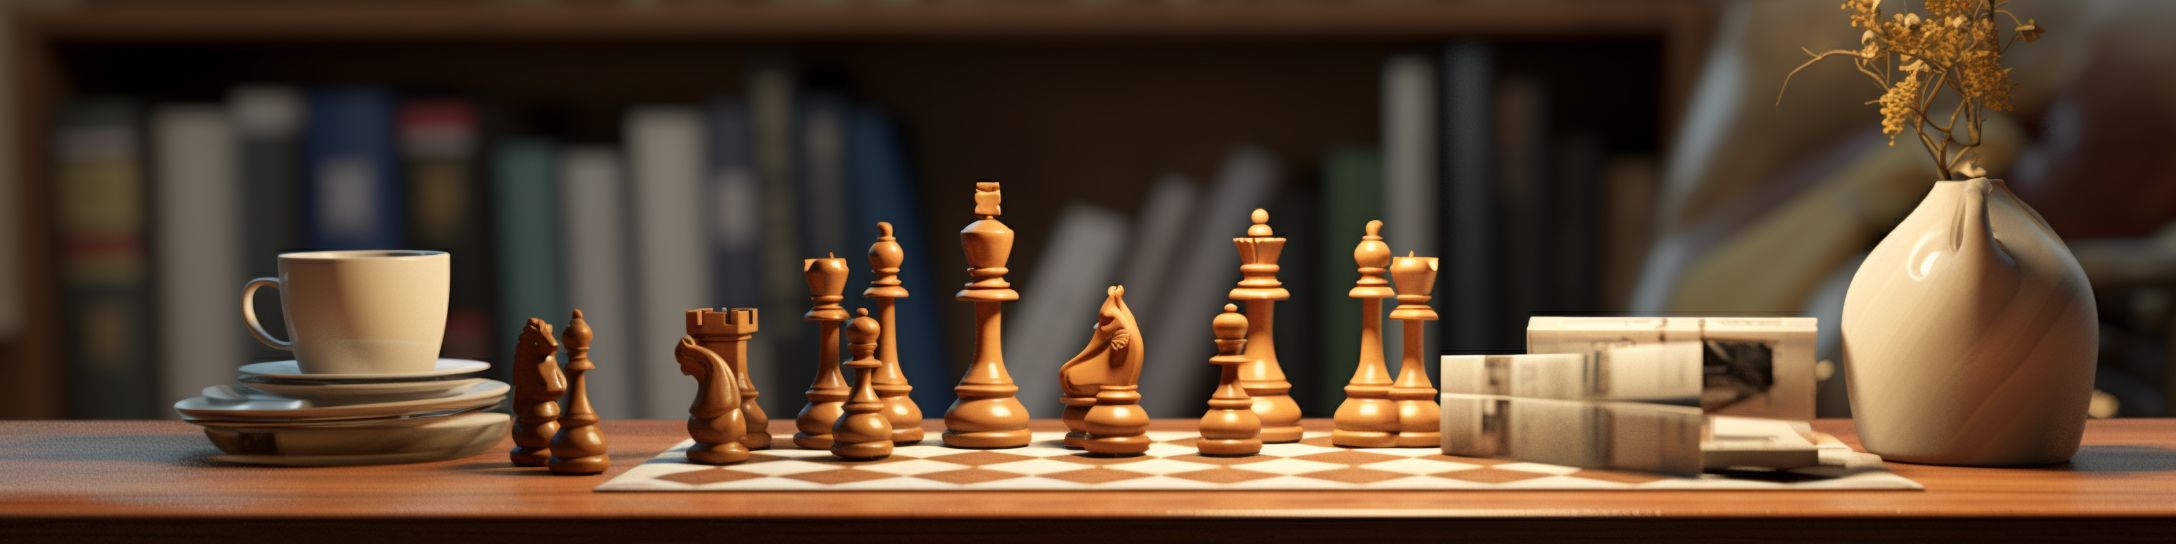 Avantages et inconvénients des petits jeux d'échecs